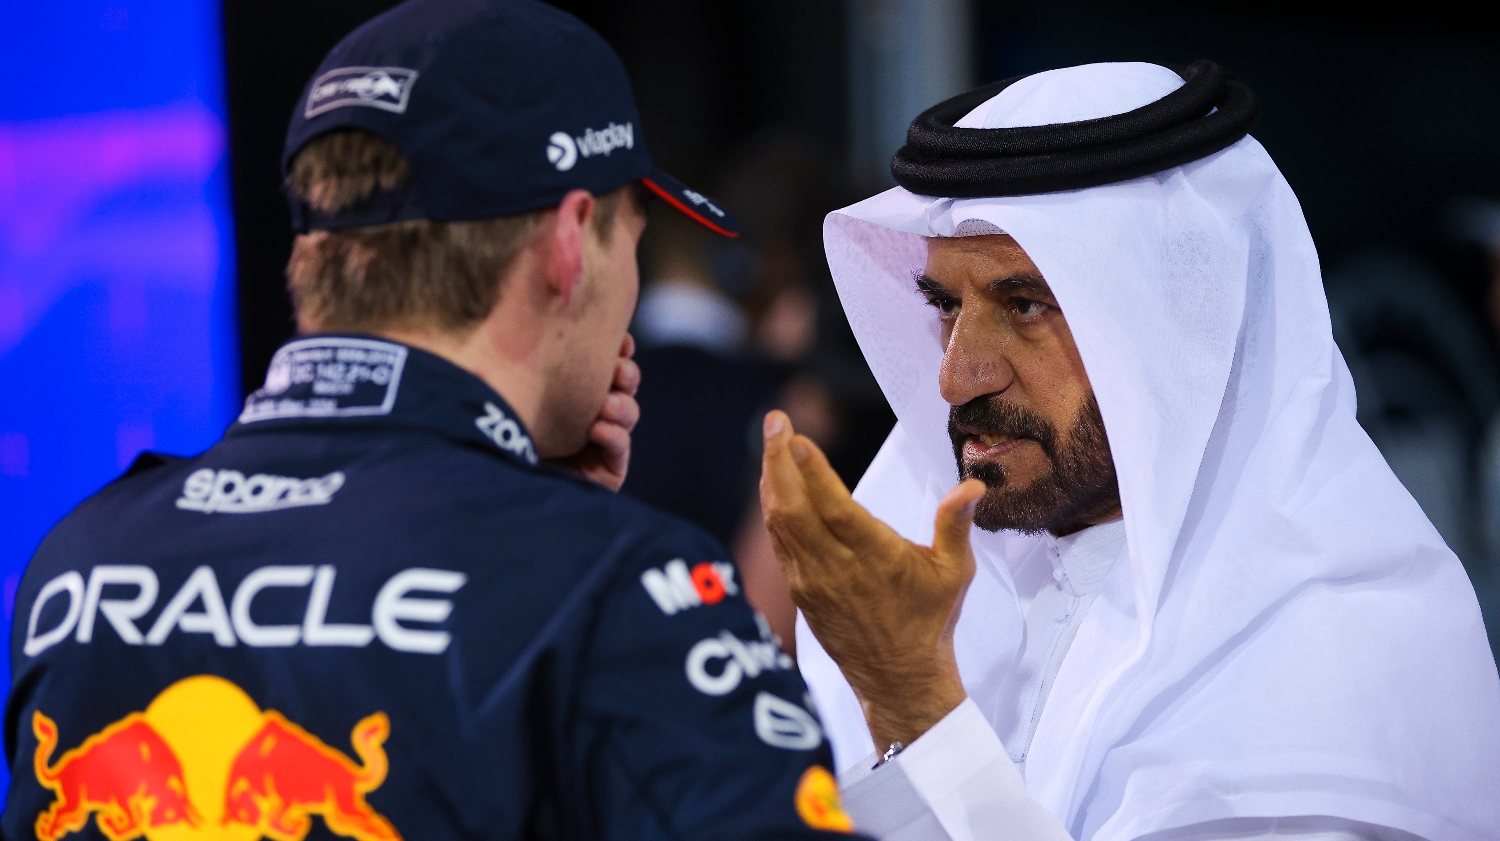 Mohammed Ben Sulayem, aqui em conversa com Max Verstappen, é uma das figuras com mais poder nos bastidores da Fórmula 1